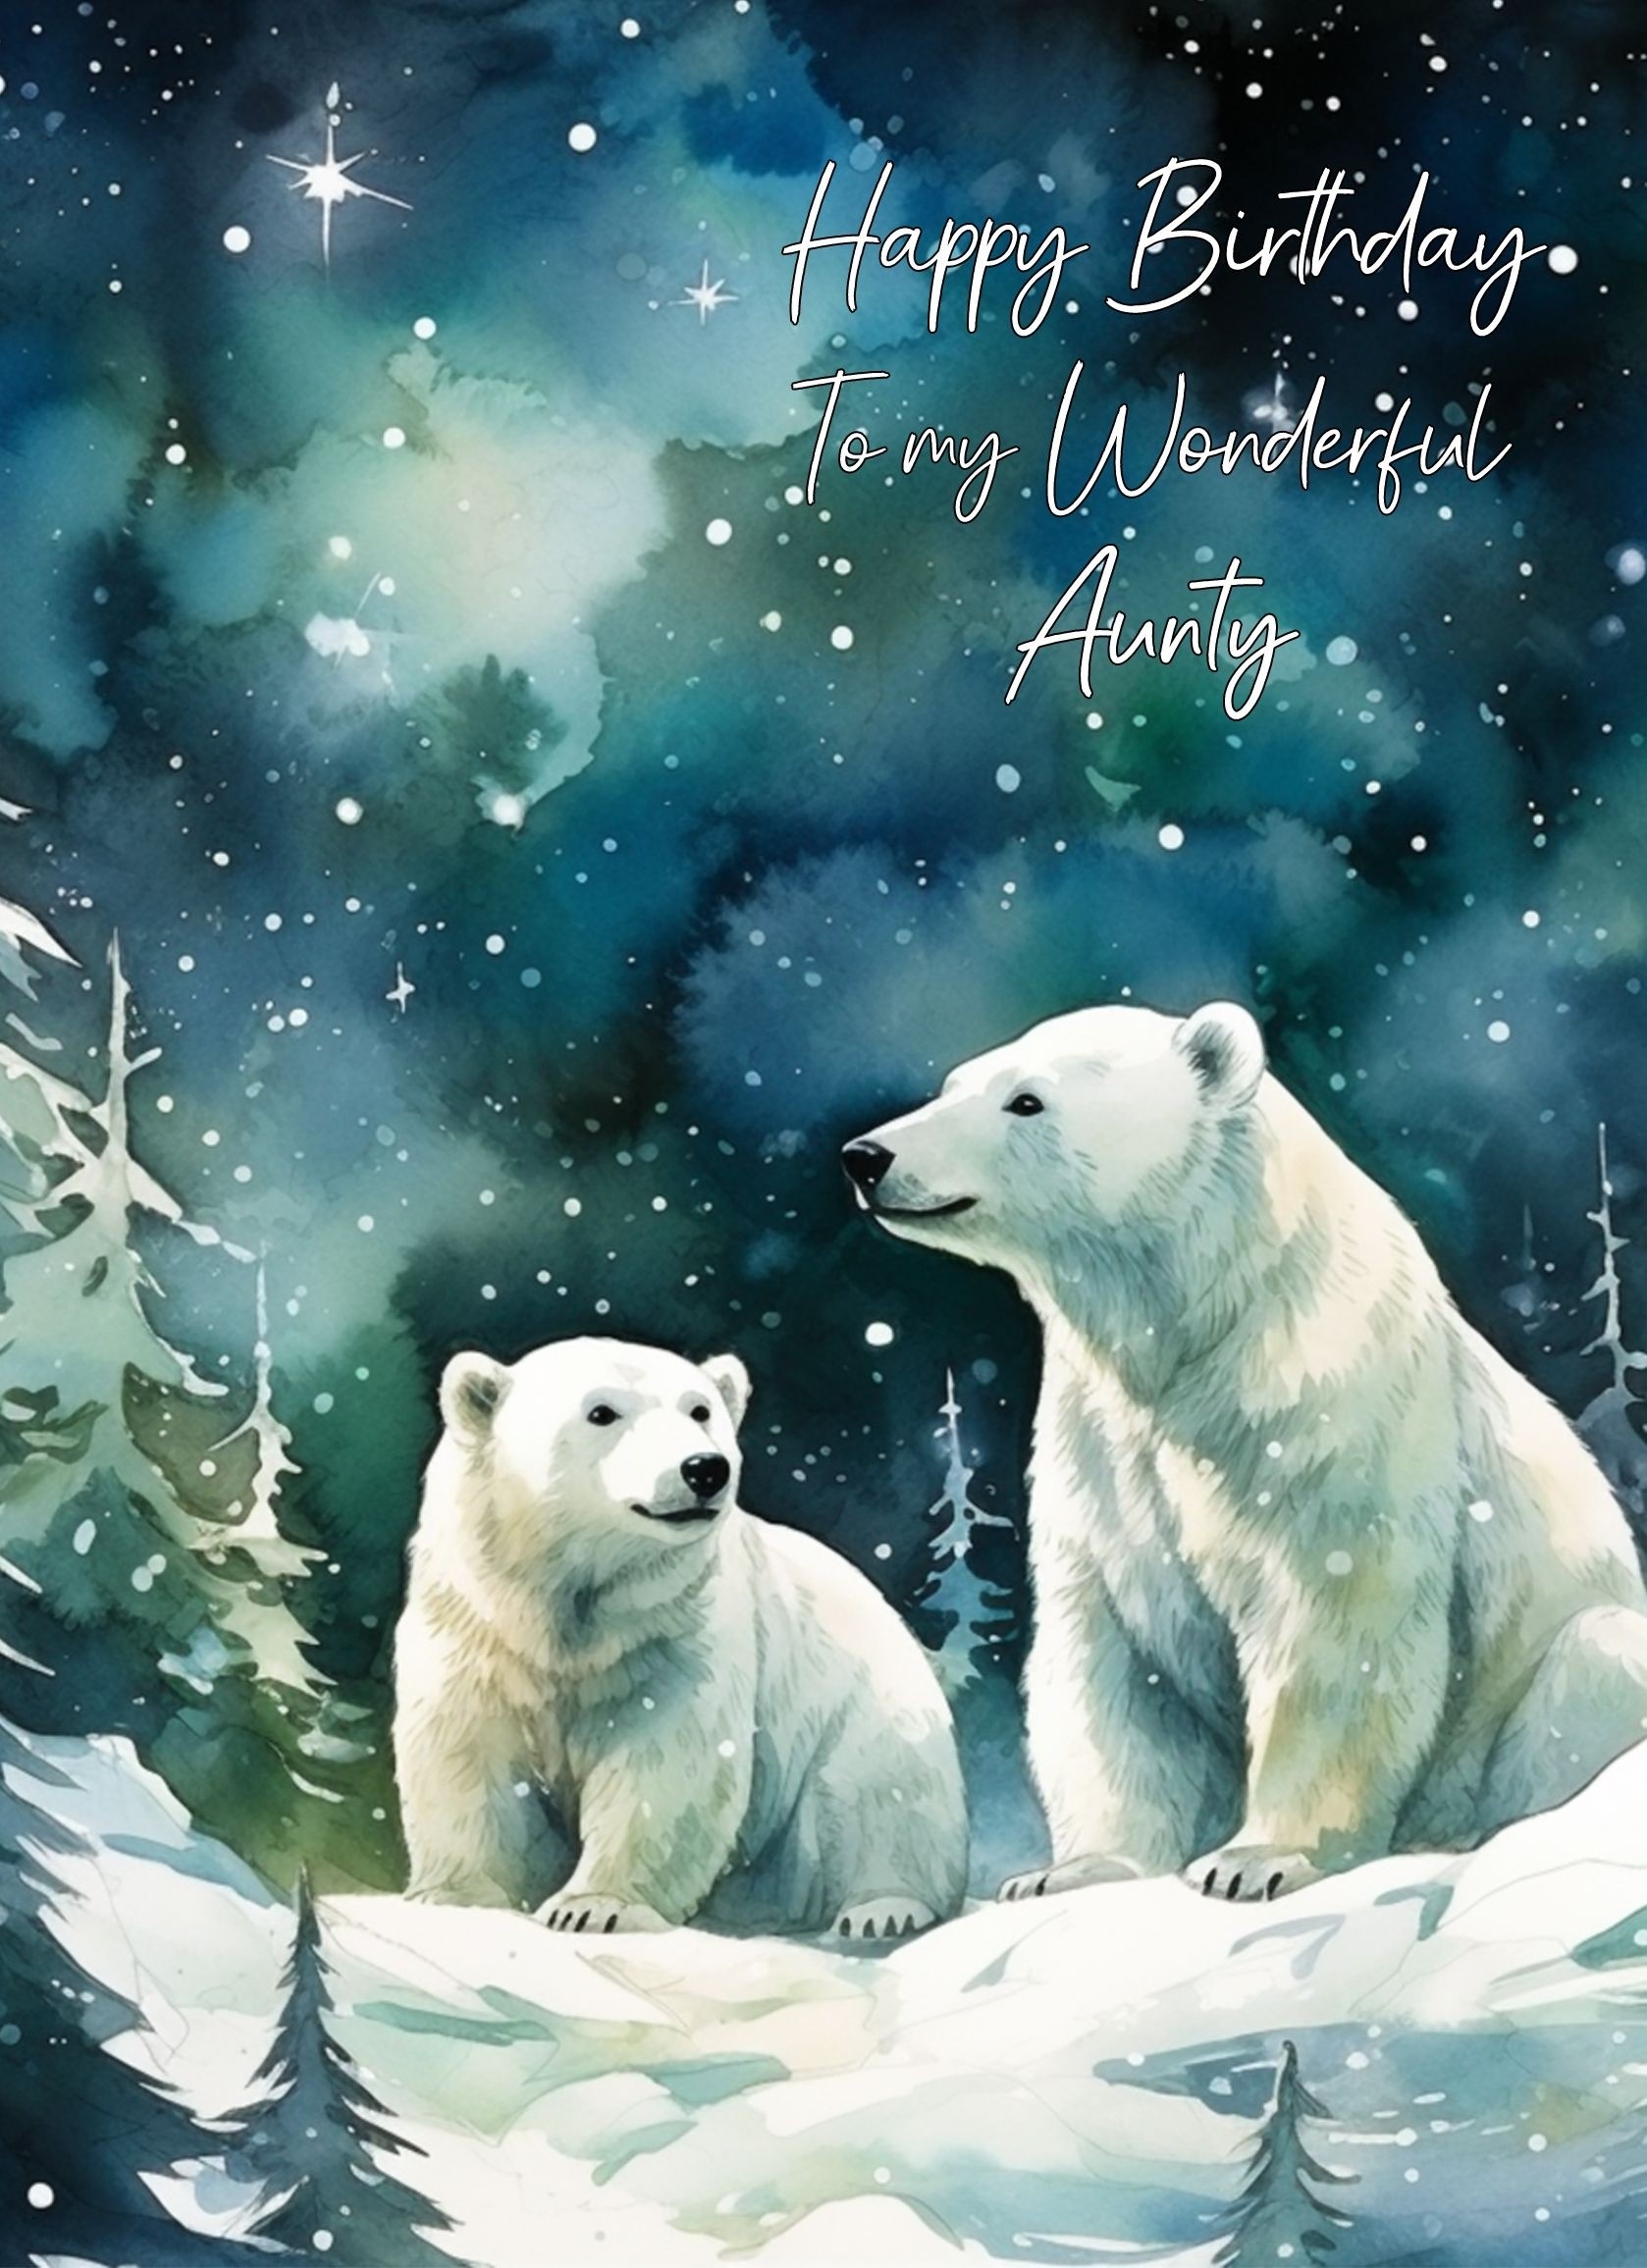 Polar Bear Art Birthday Card For Aunty (Design 4)